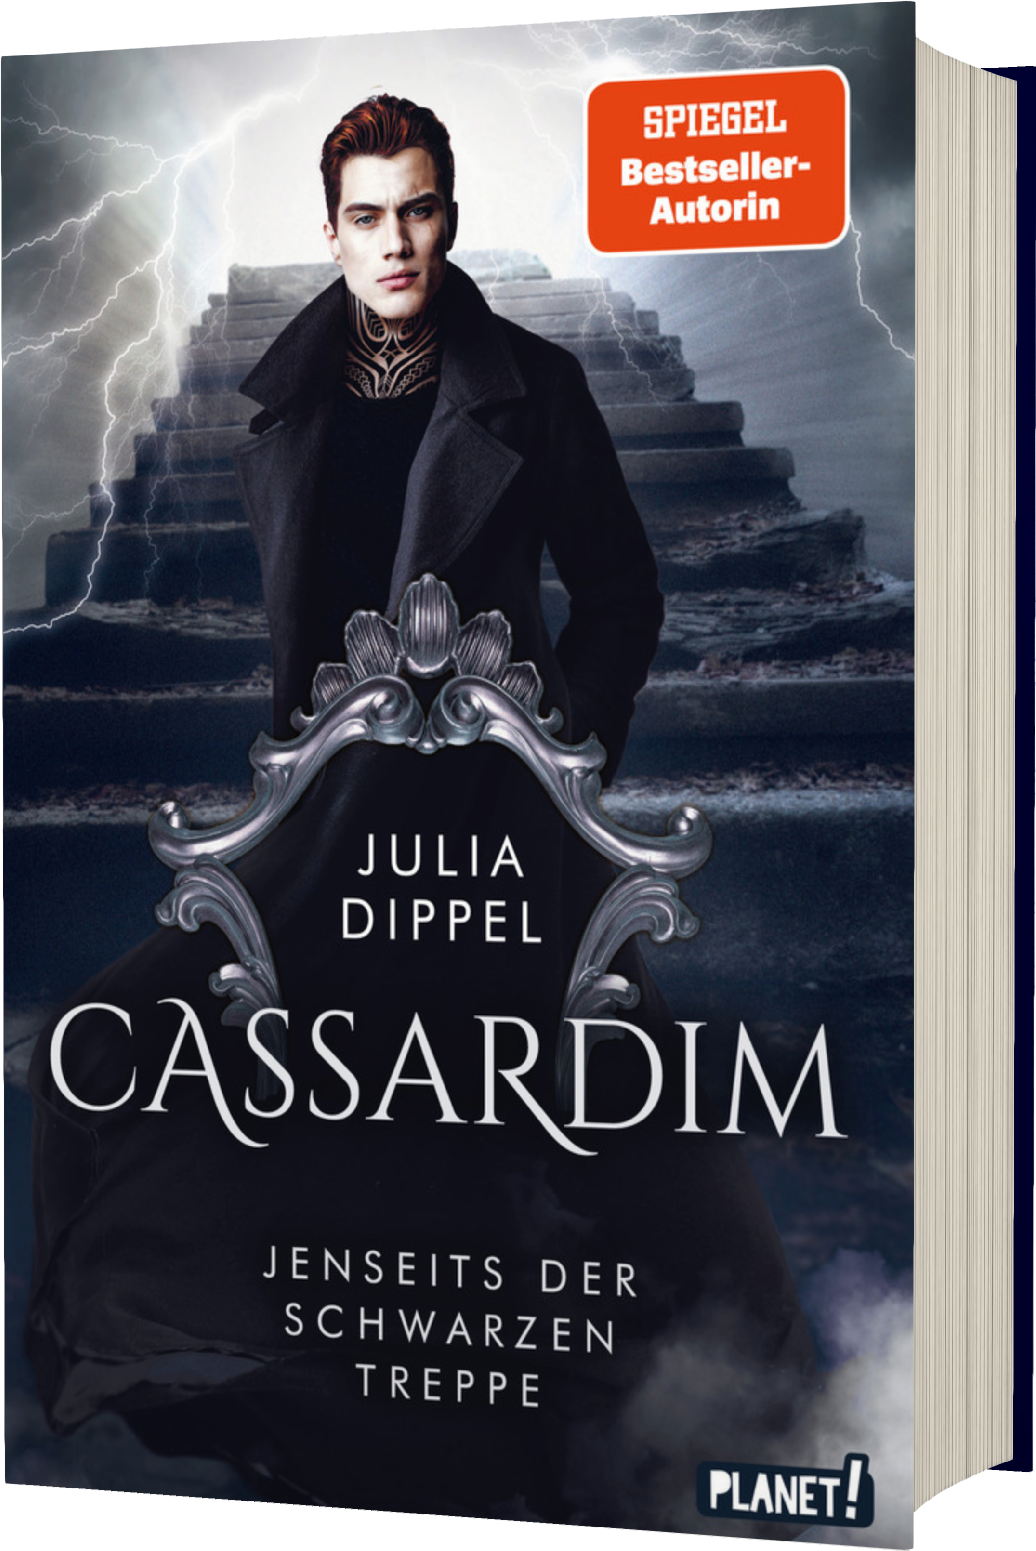 Bücherblog. Neuzugang. Buchcover. Cassardim - Jenseits der Schwarzen Treppe (Band 2) von Julia Dippel. Jugendbuch. Fantasy. Planet!.